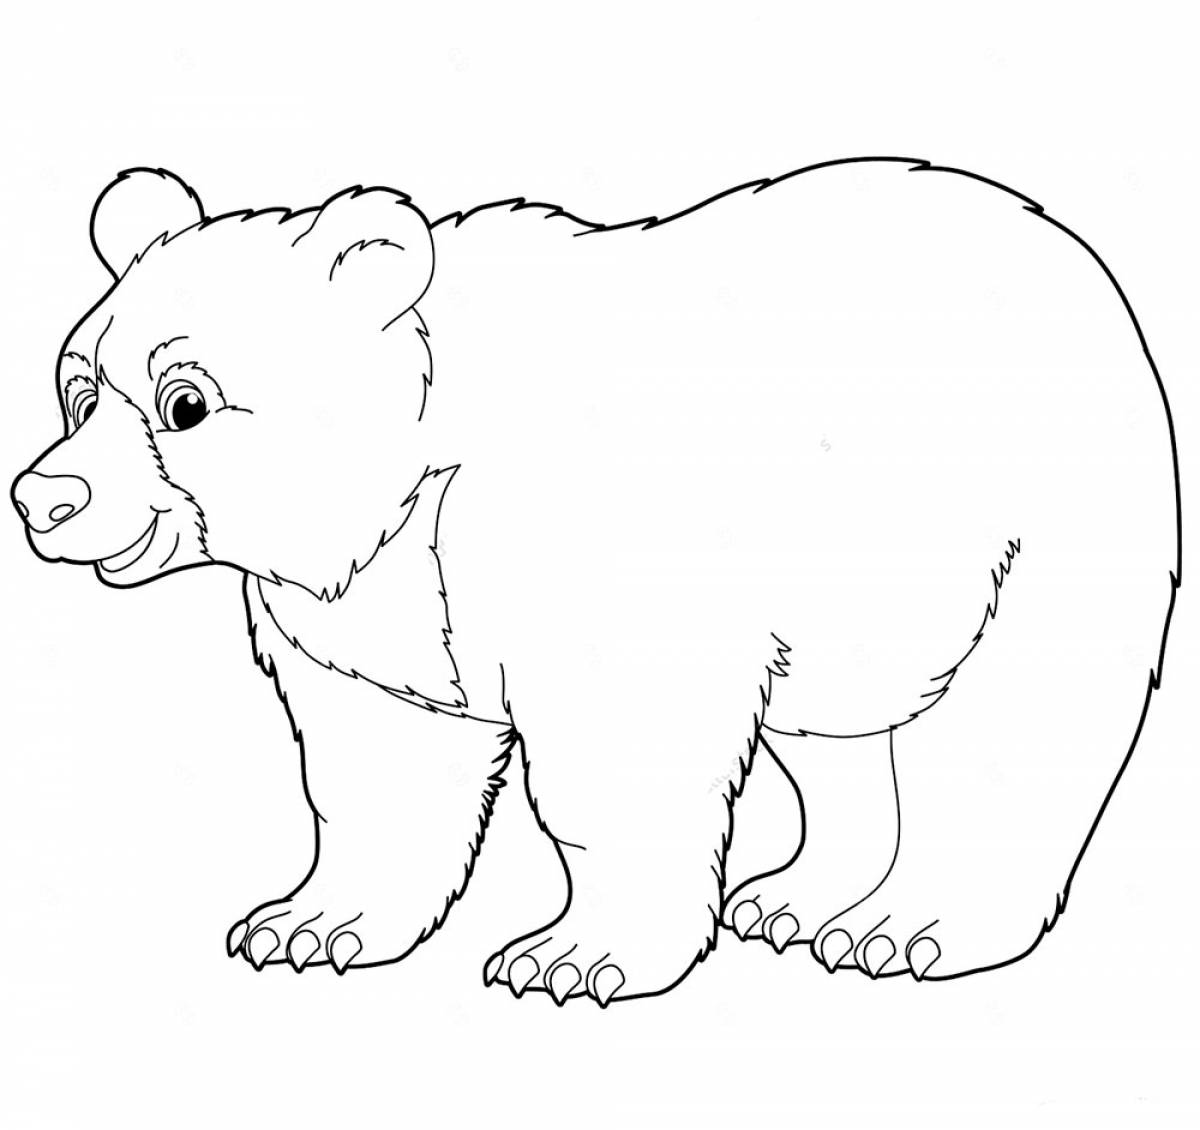 Polar bear for children 5 6 years old #2